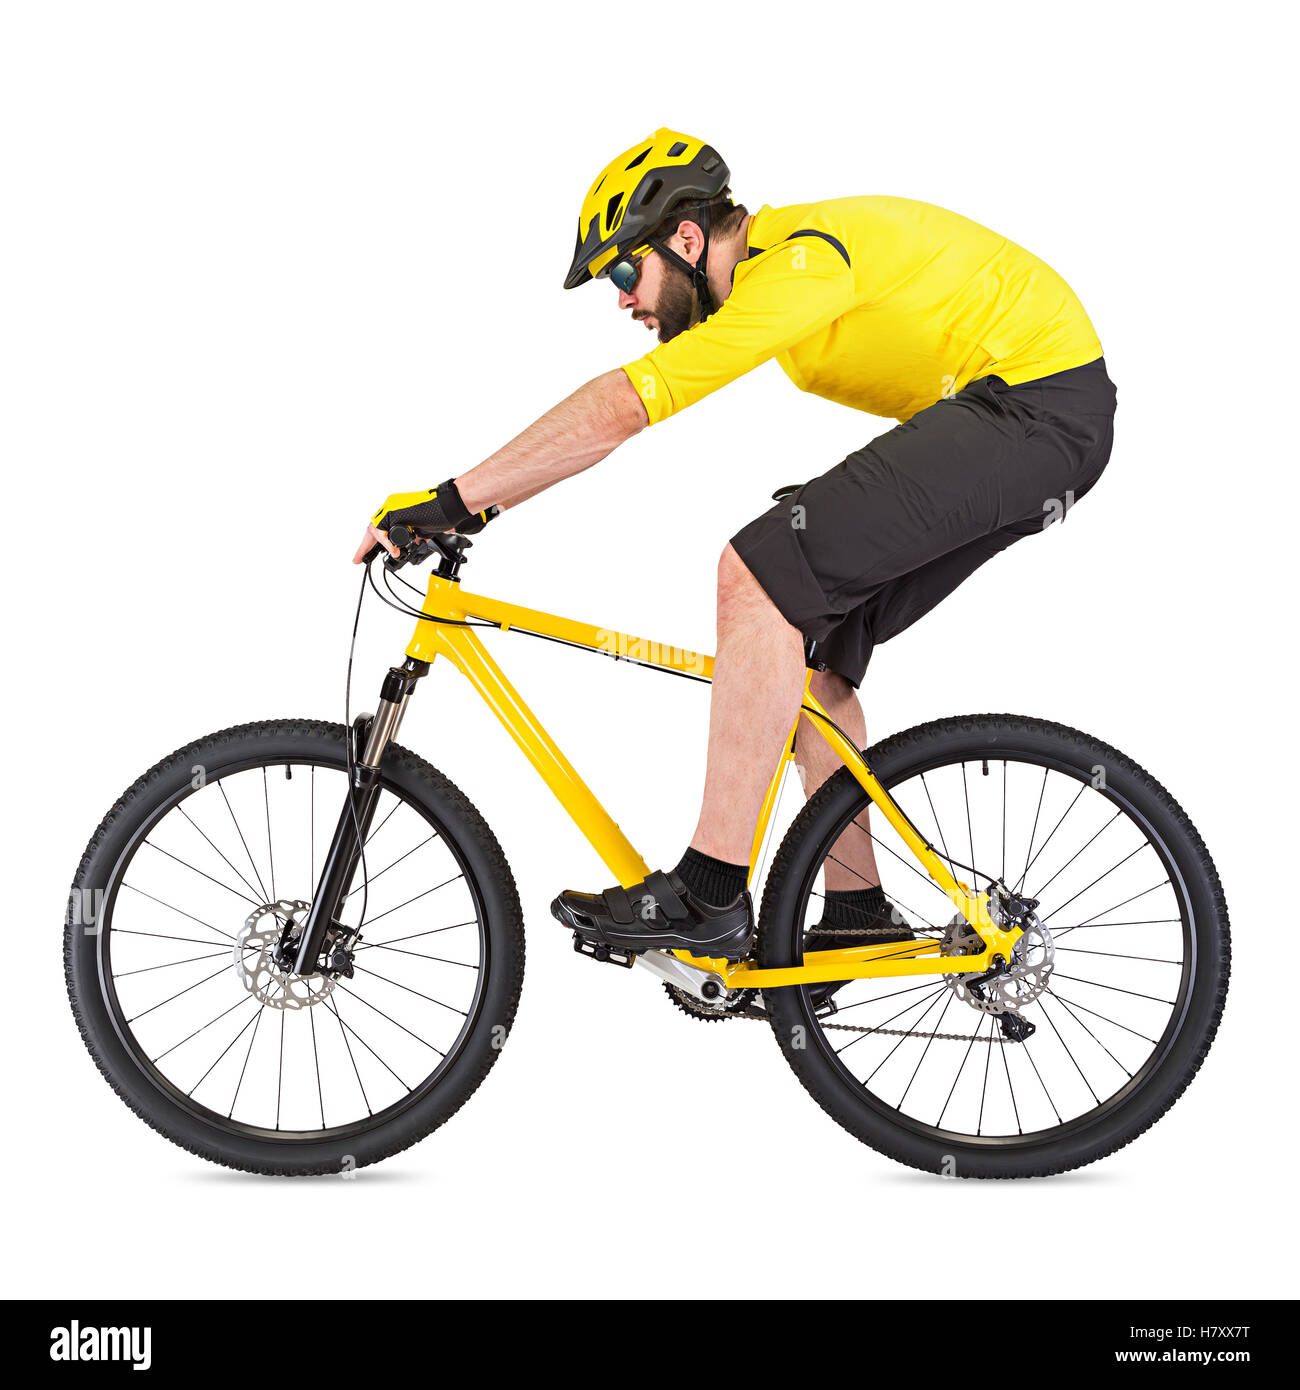 Jeune cycliste avec barbe vtt jaune isolé sur fond blanc Banque D'Images